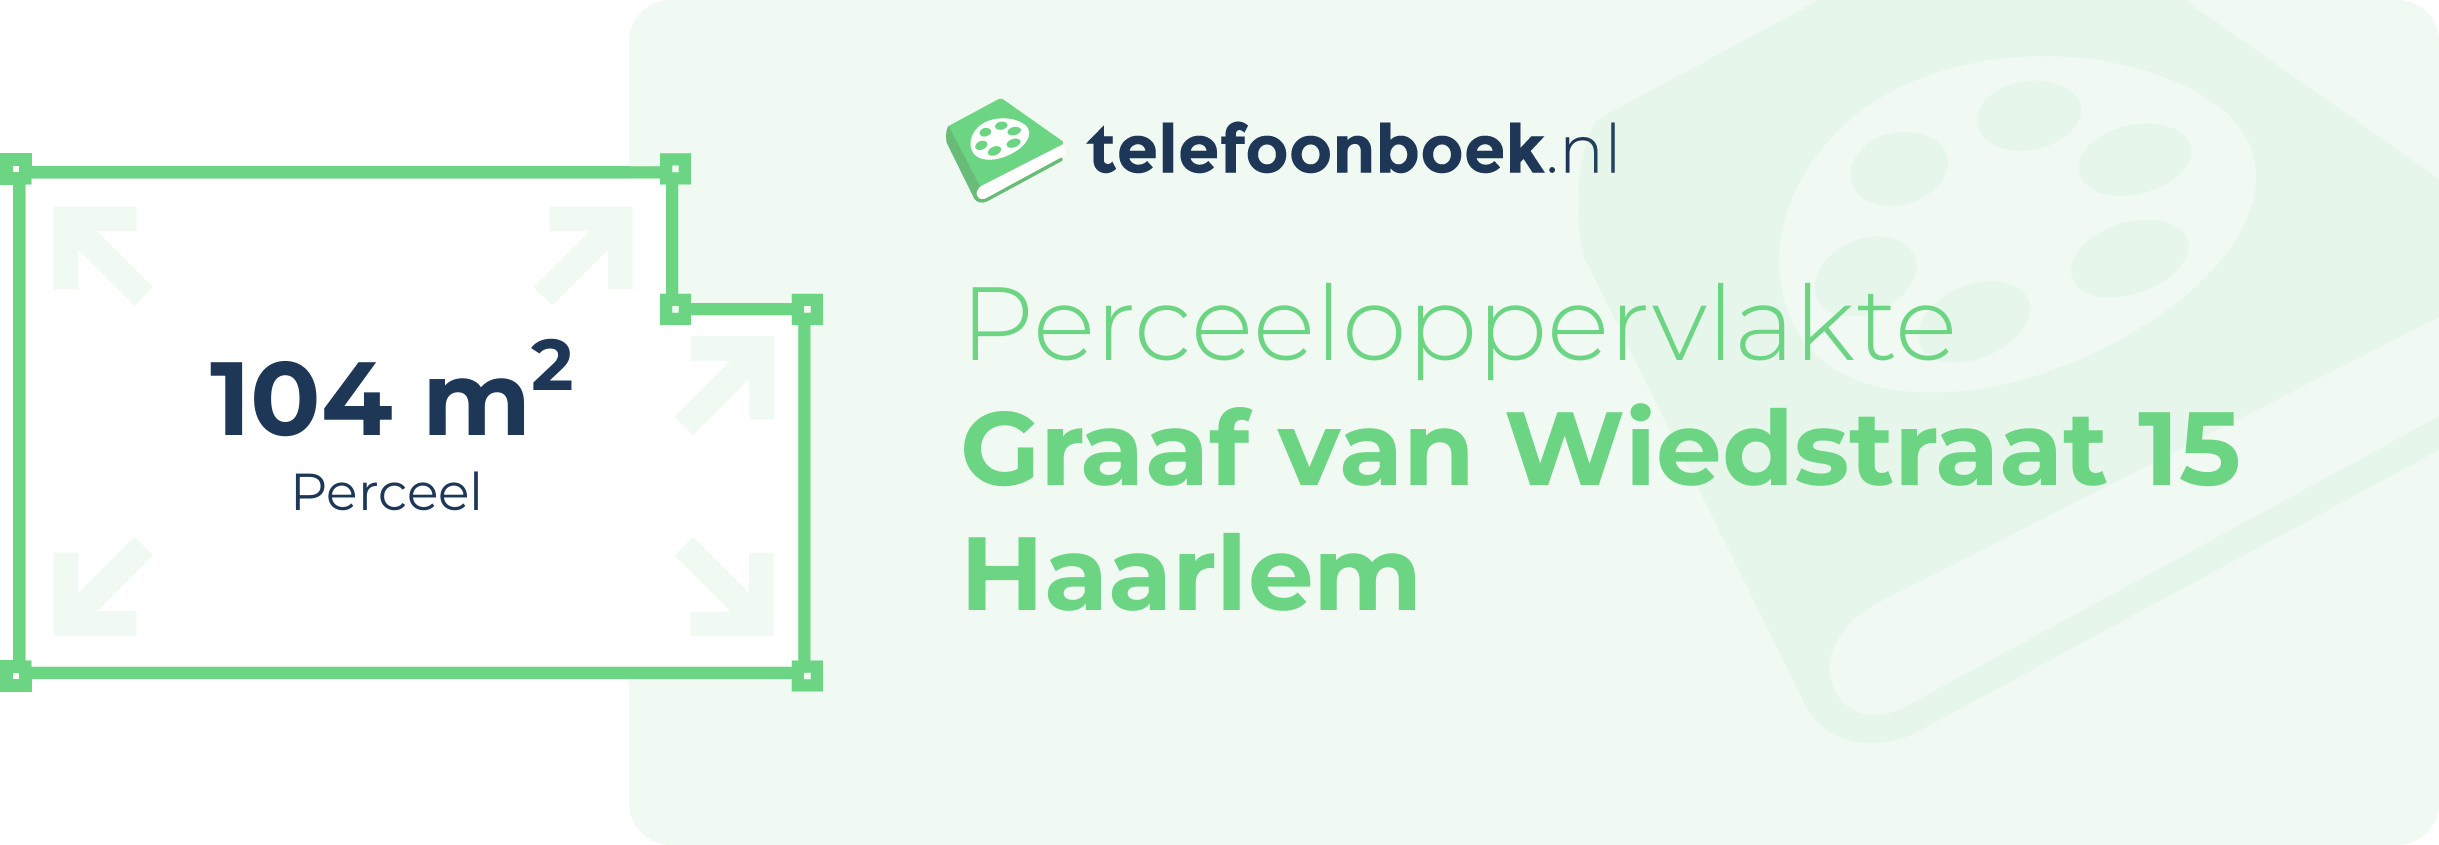 Perceeloppervlakte Graaf Van Wiedstraat 15 Haarlem